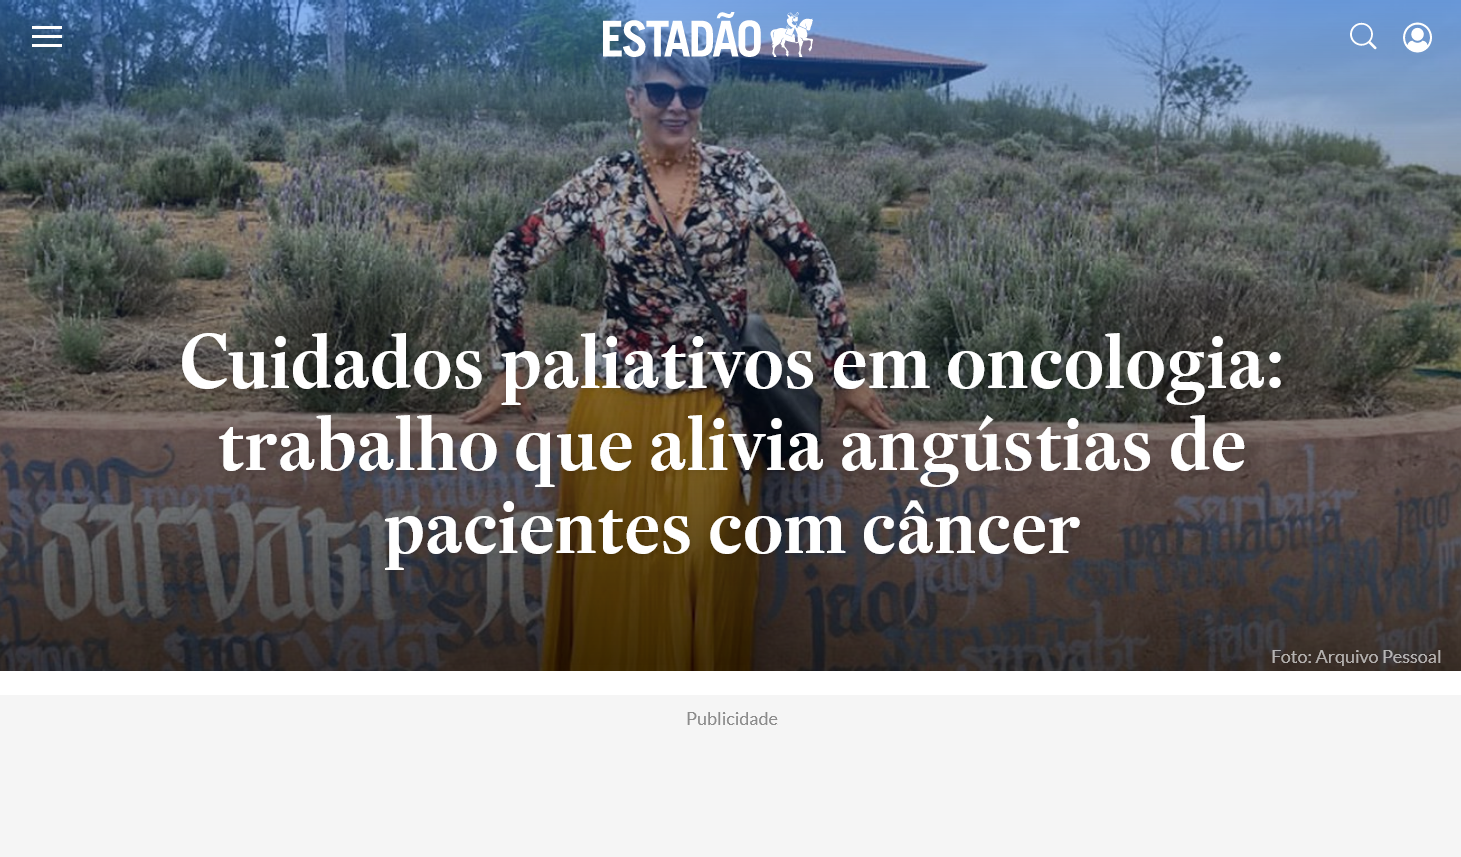 Cuidados paliativos em oncologia: trabalho que alivia angústias de pacientes com câncer